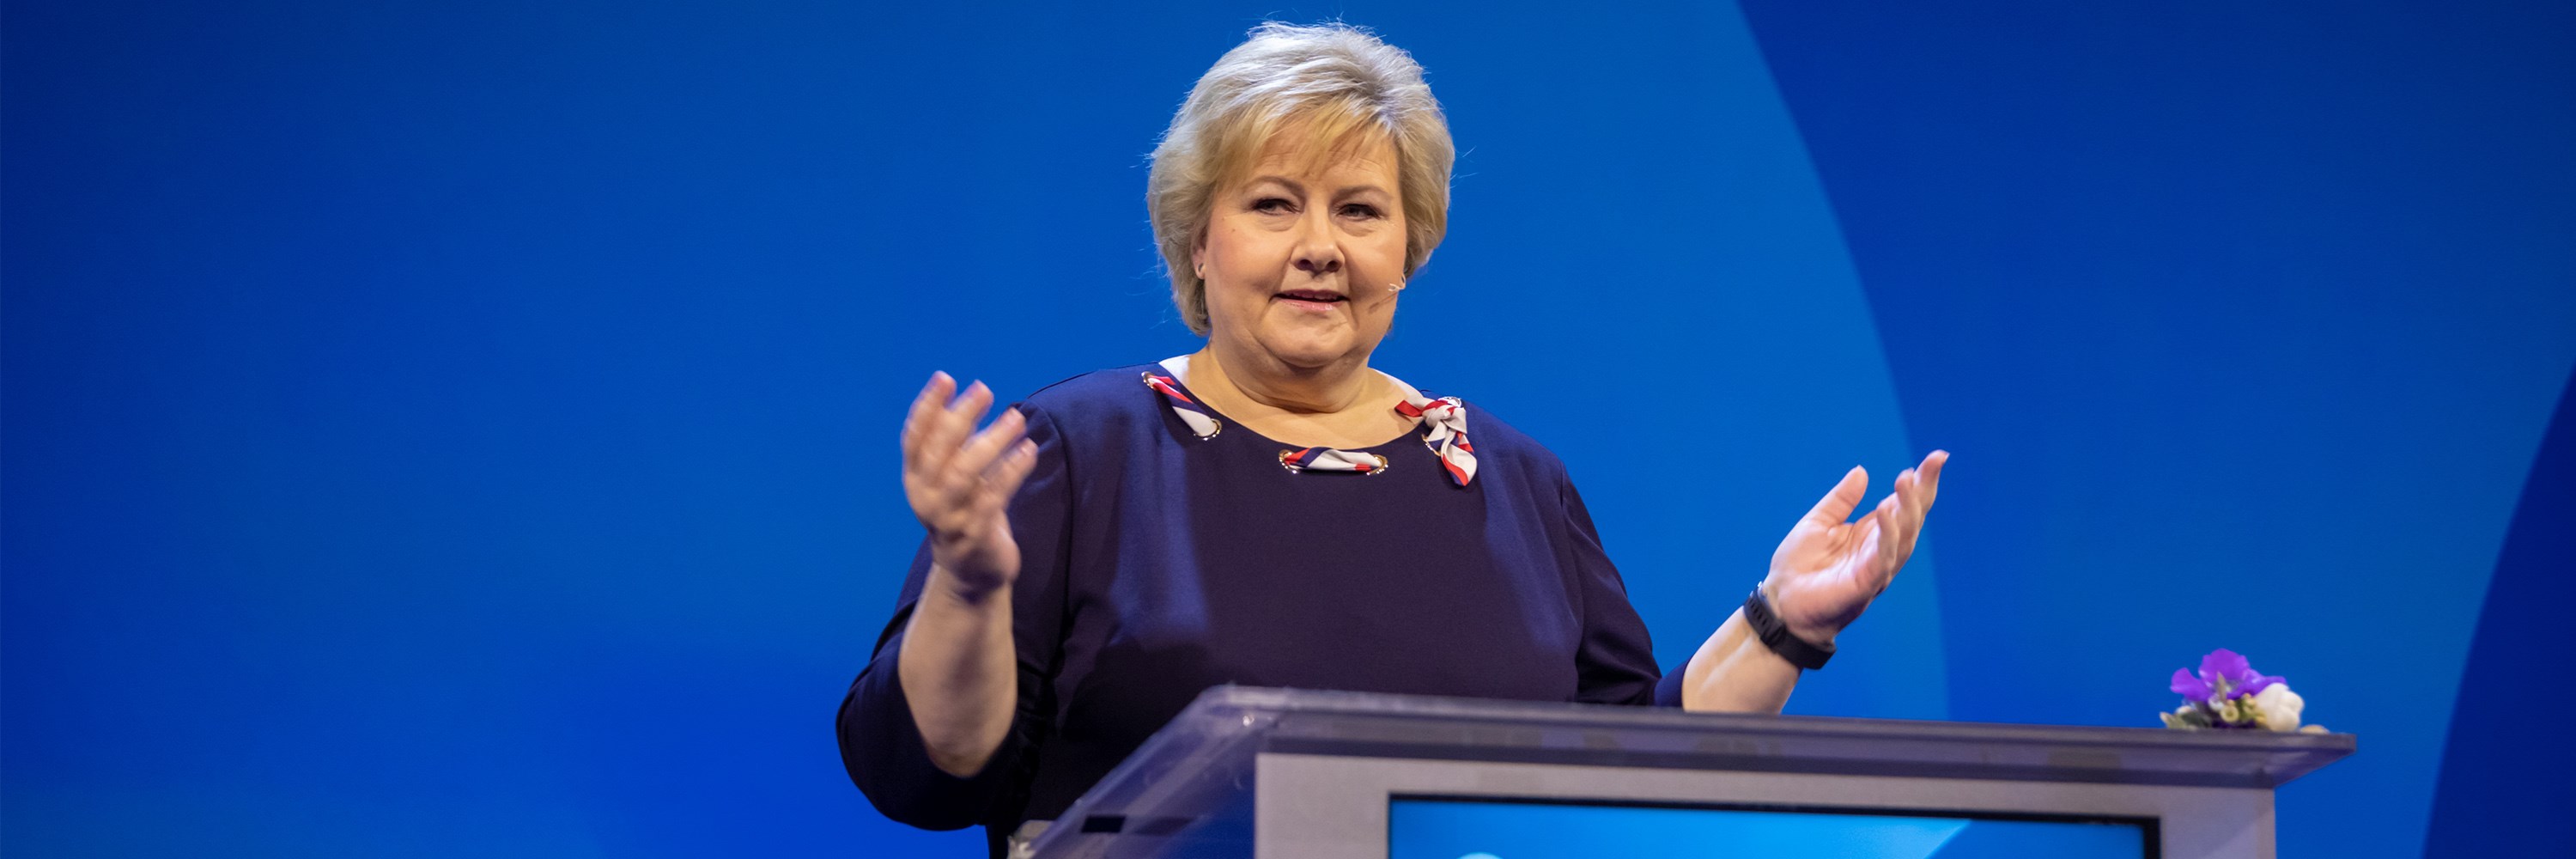 Erna Solberg på Høyres landsmøte.